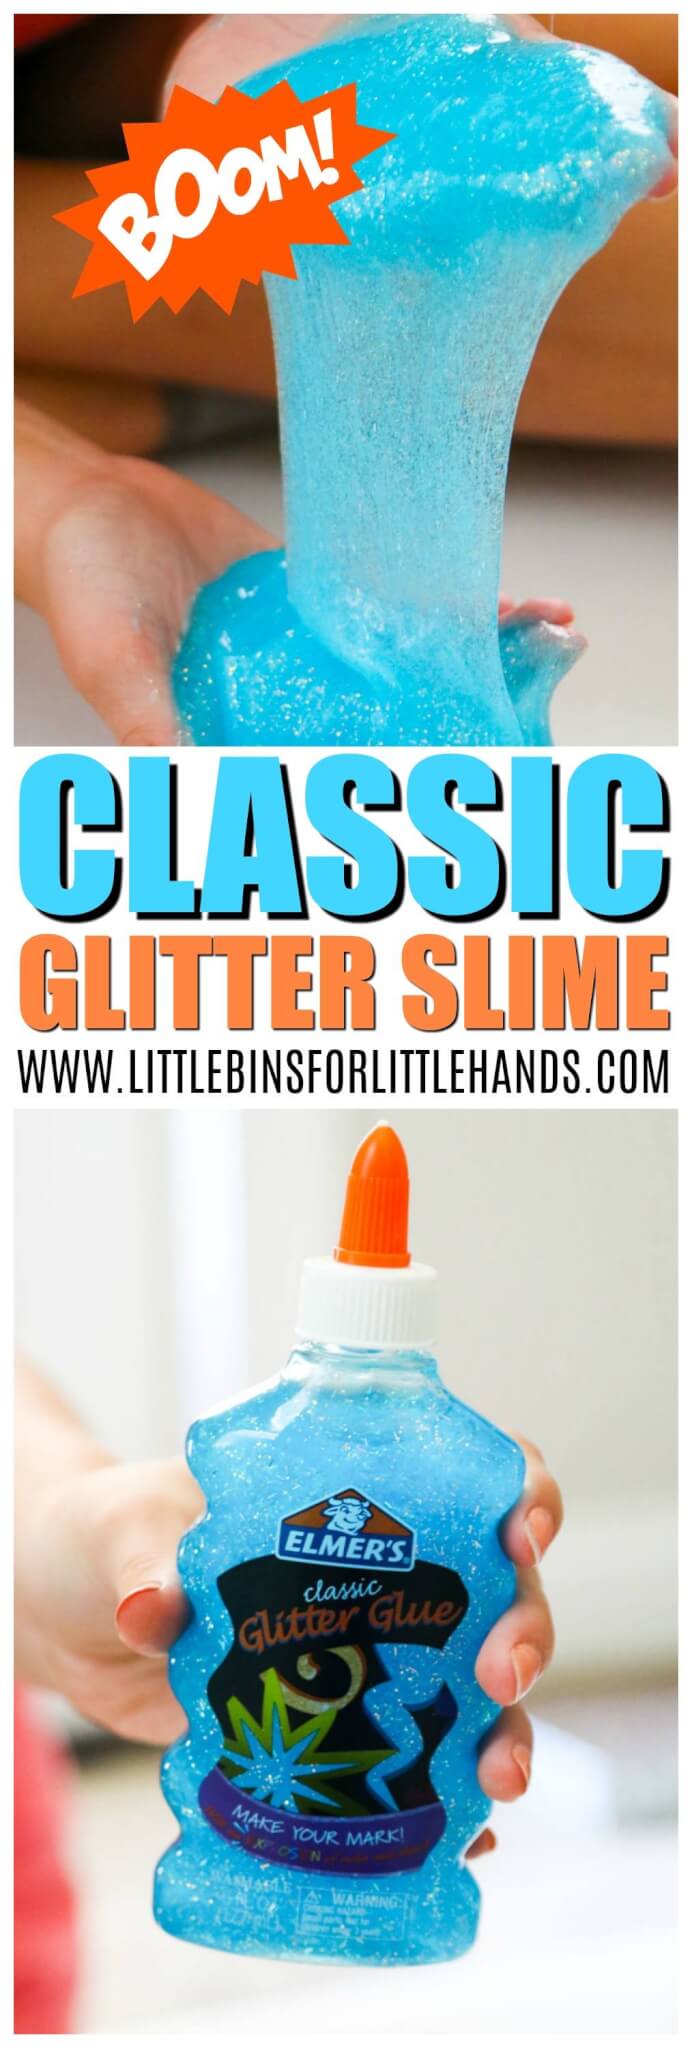 Elmers Glitter Glue Slime recipe for Easy Slime Making. 2 ingredient slime recipe for homemade glitter slime